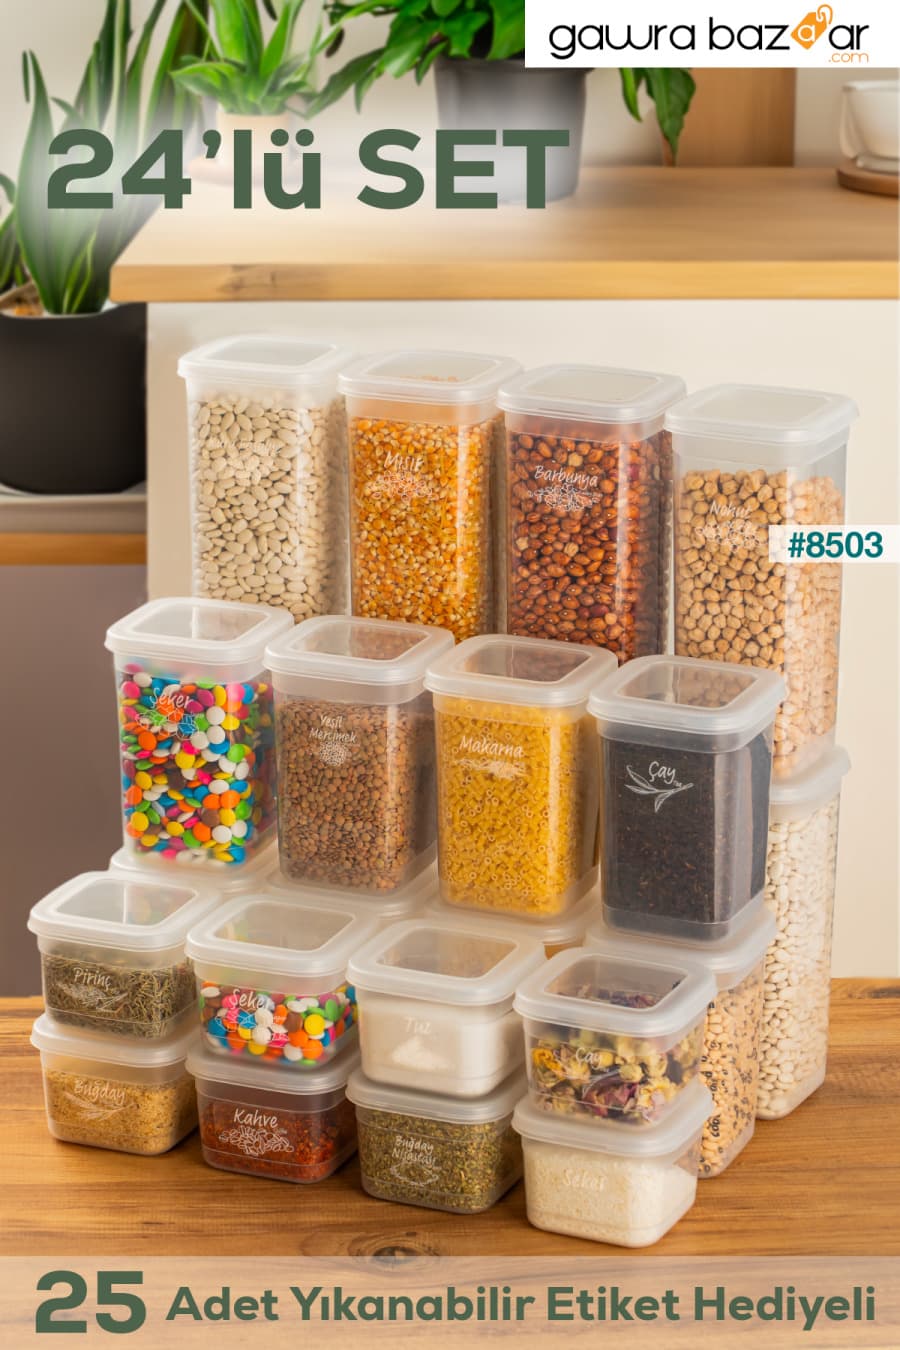 433-4 مجموعة حاويات تخزين التوابل المكونة من 24 قطعة مربعة من المواد الغذائية 8x(0.60+1.30+1.90) لتر شفاف Porsima 0